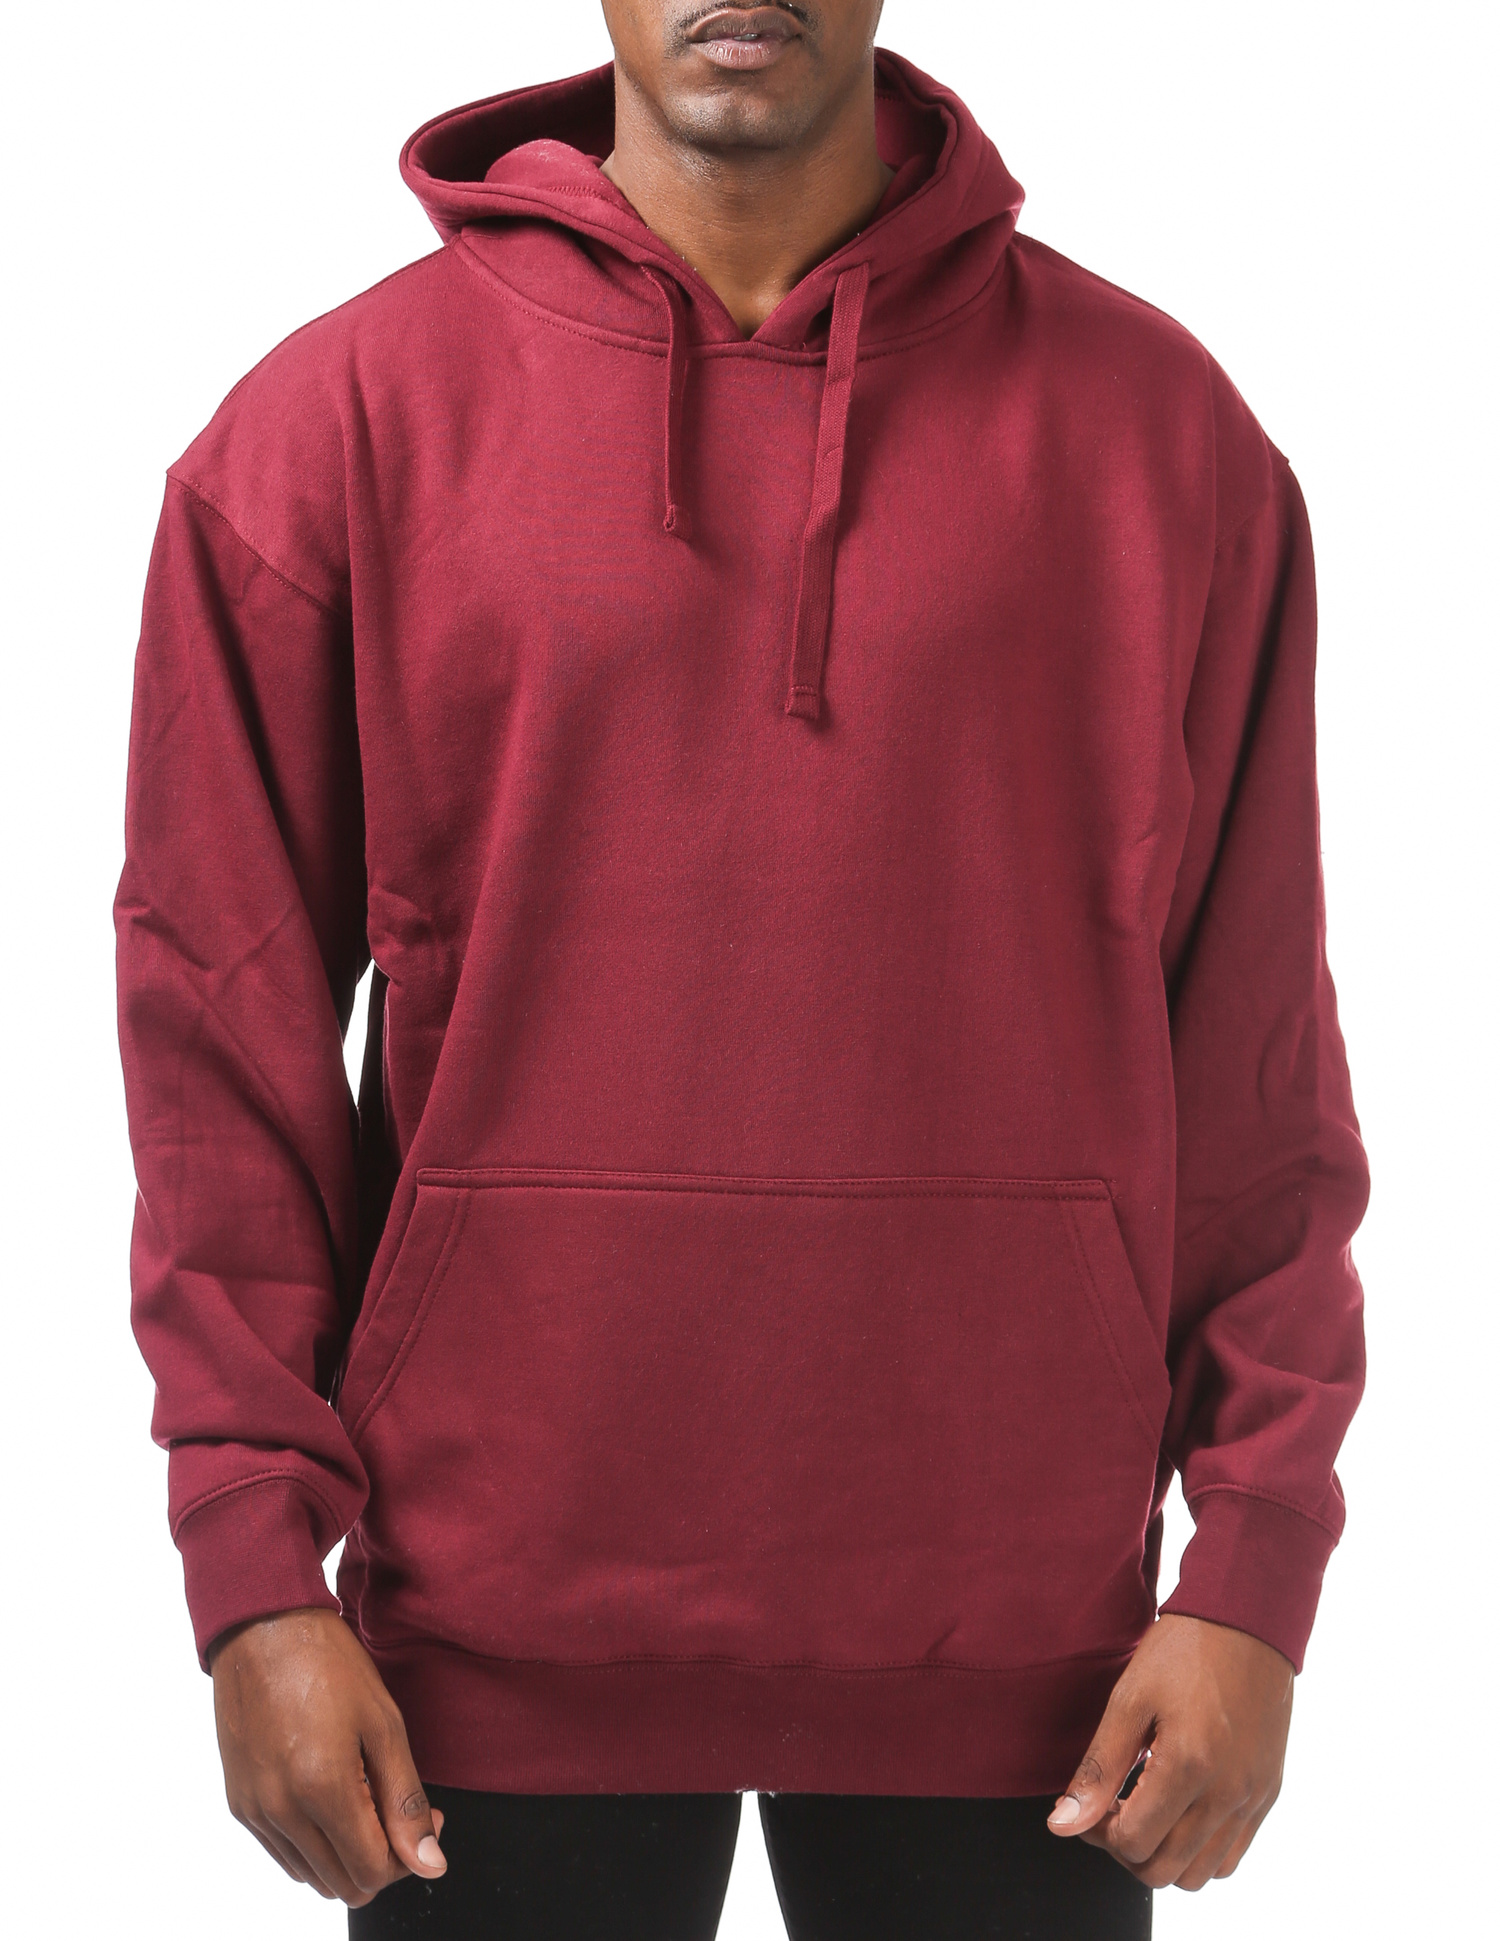 148 MAROON Comfort Pullover Hoodie (9oz) - Sweaters